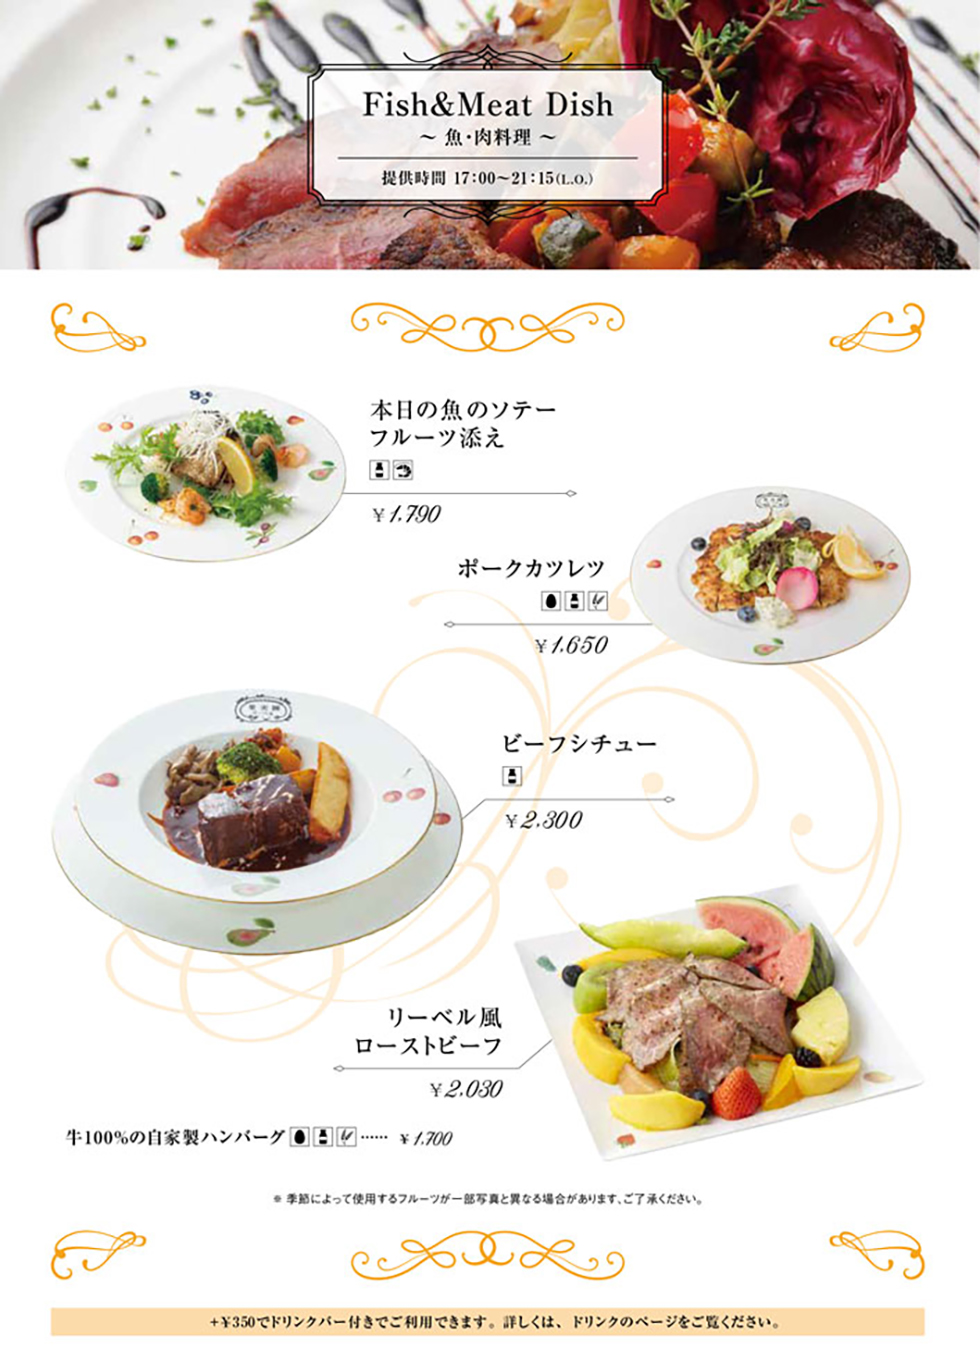 池袋東武店の食事メニュー定番魚・肉料理